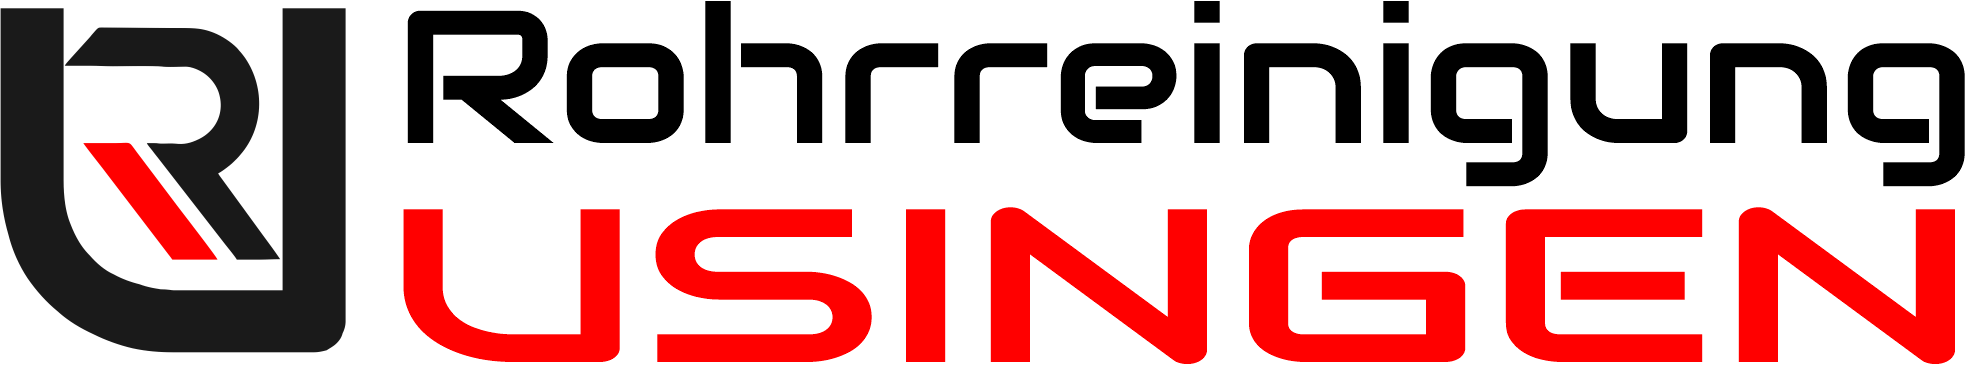 Rohrreinigung Usingen Logo